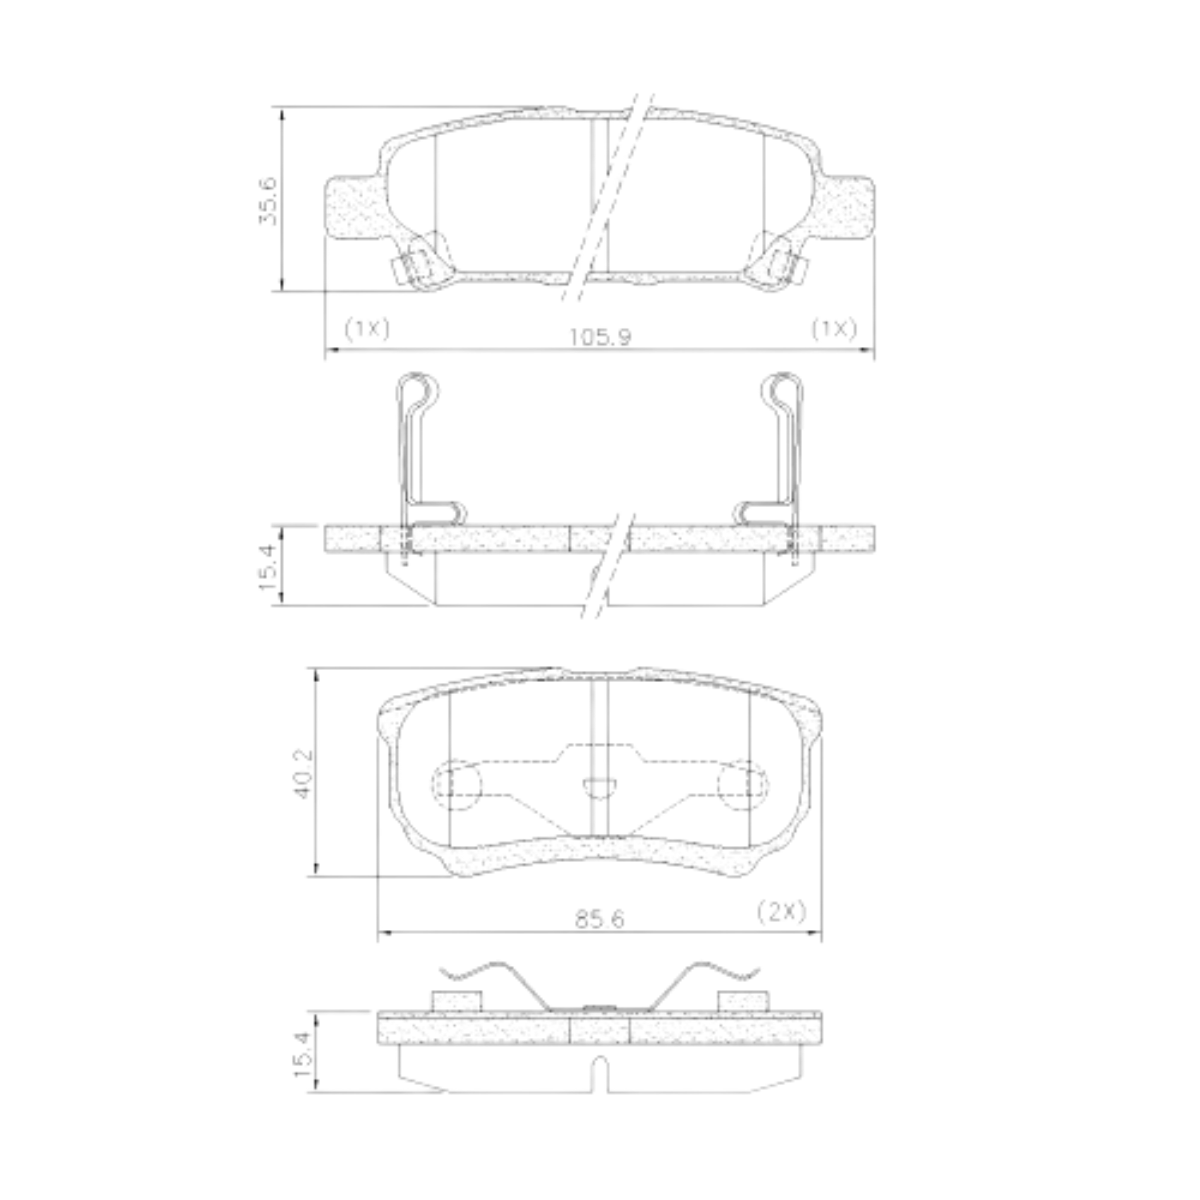 Pastilha Freio Mitsubishi Lancer 2.0 16v Cvt 2011 Ate 2015 Traseira Sistema Akebono Fras-le Pd/723